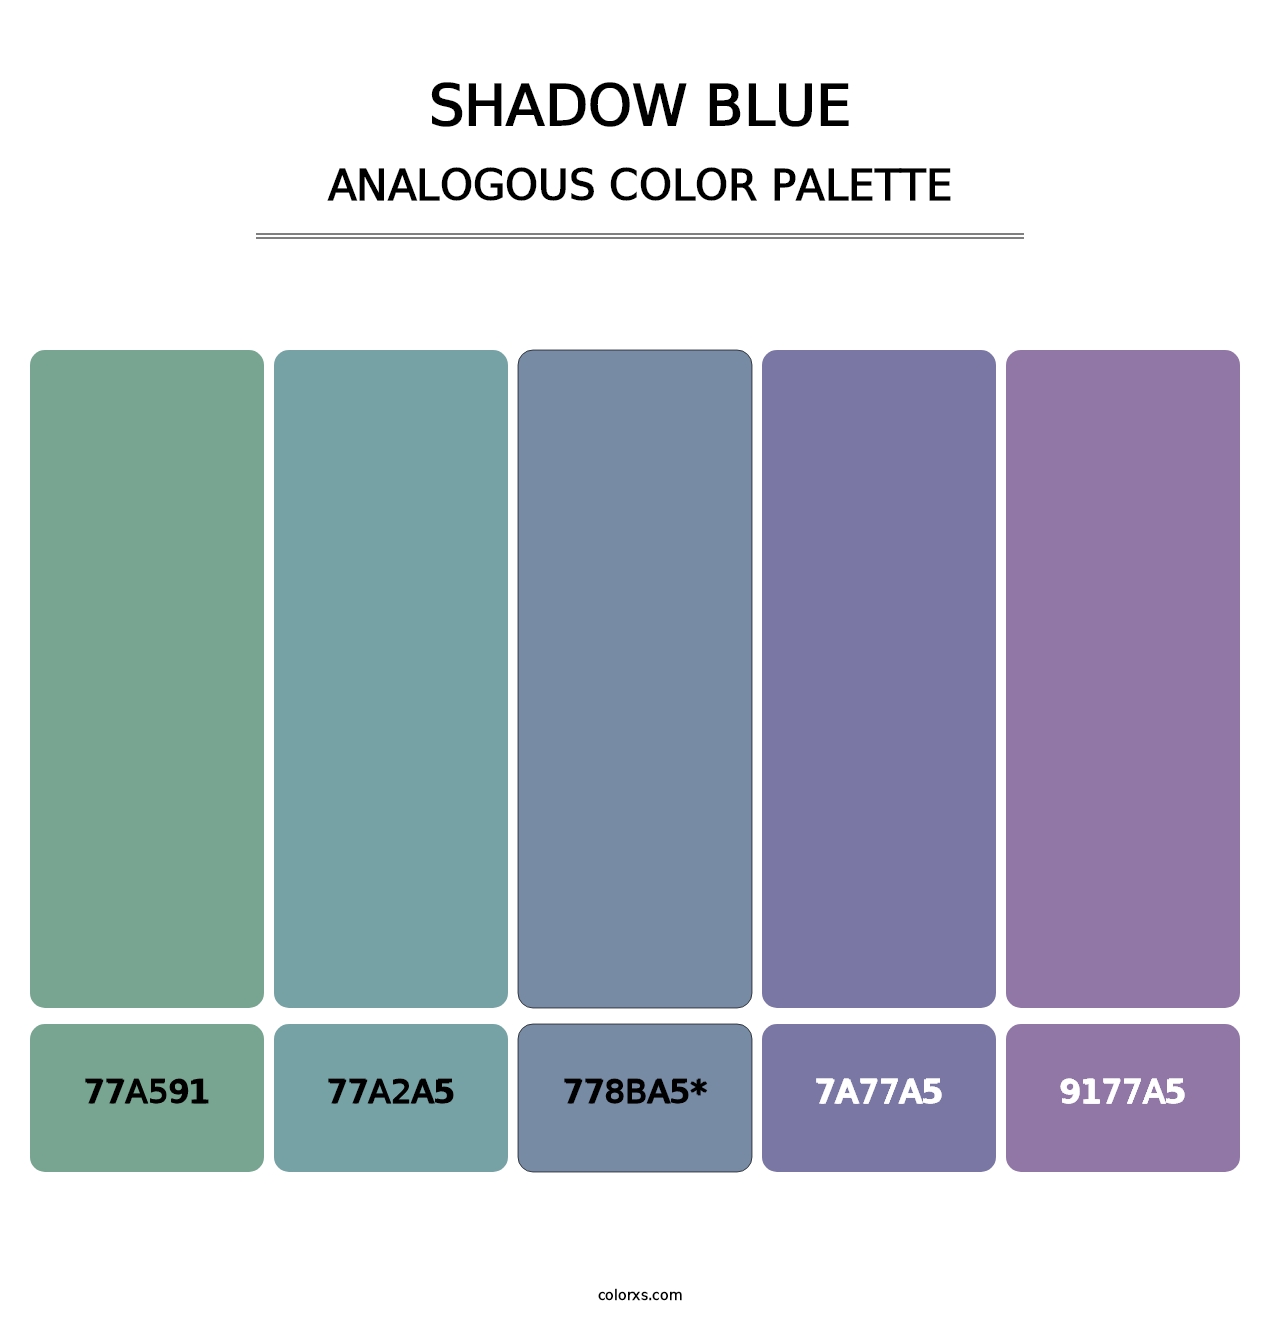 Shadow Blue - Analogous Color Palette